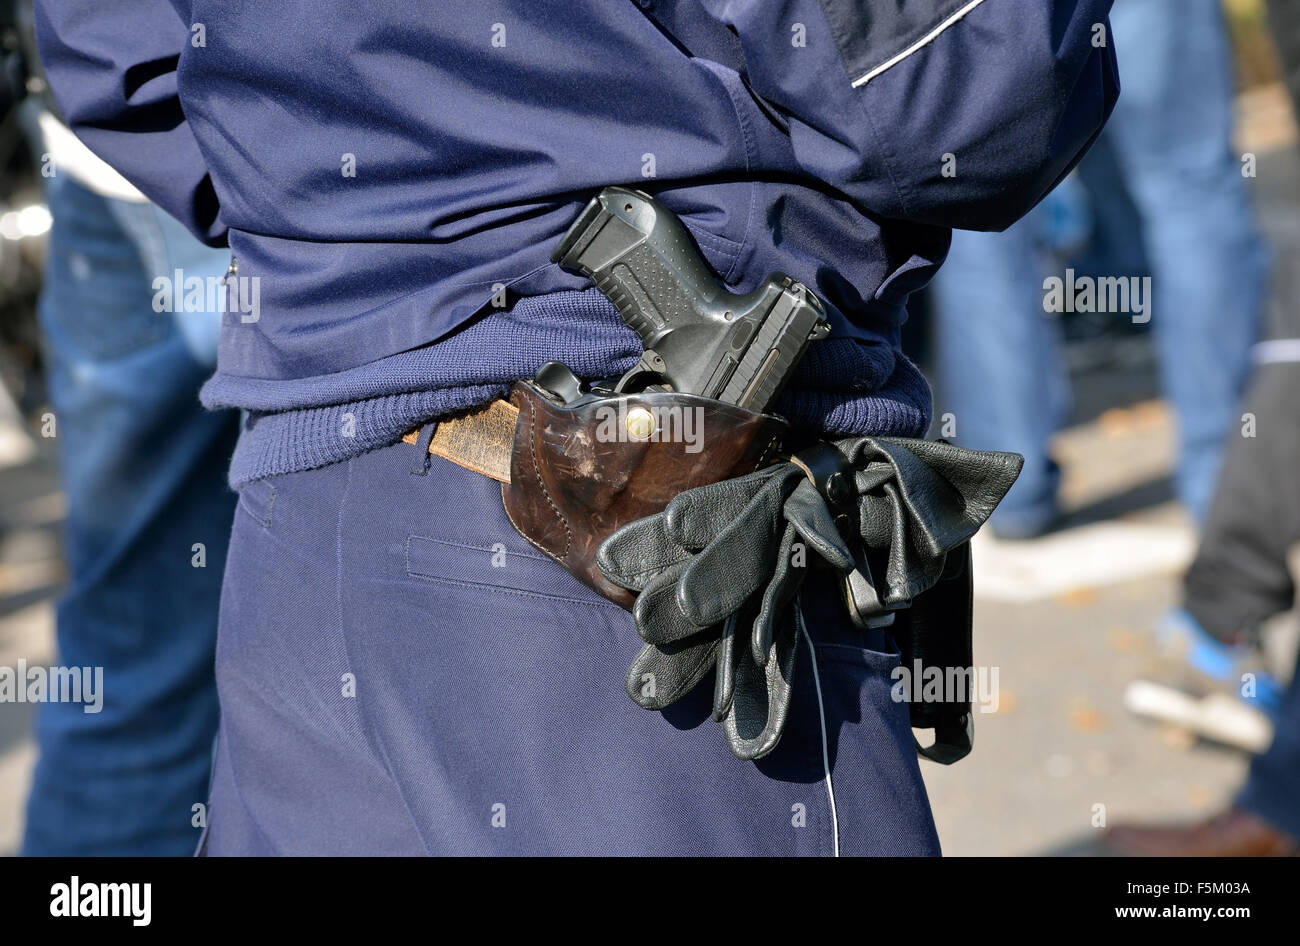 Pistola Enfundada En El Cinturón De Un Policía Con Uniforme Negro Imagen  editorial - Imagen de uniforme, torso: 232403150